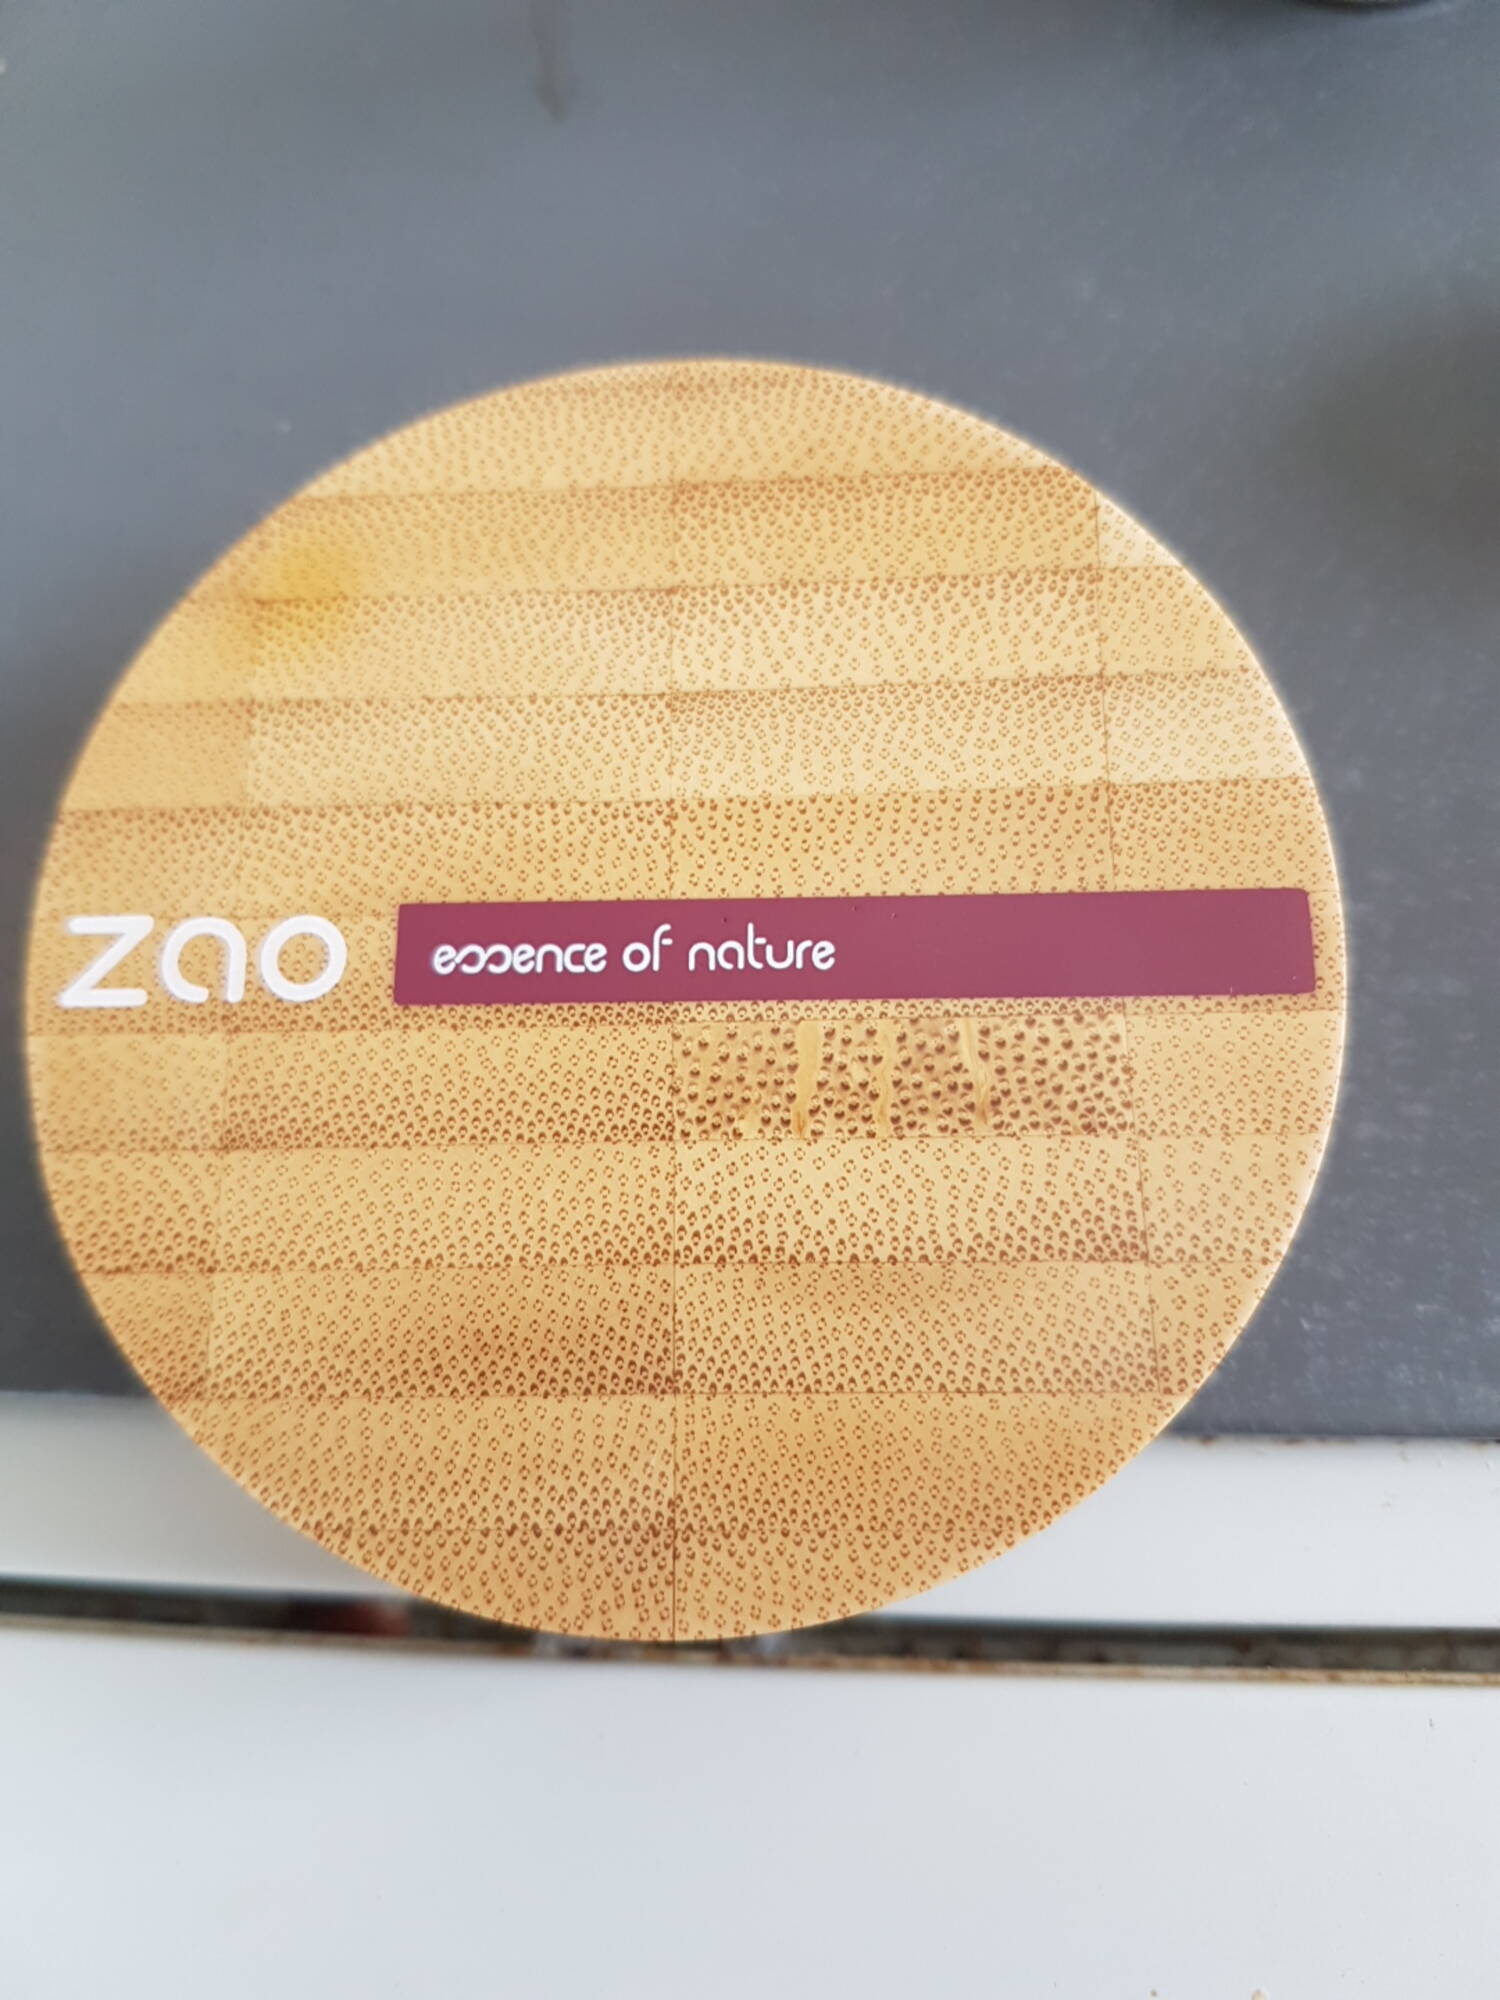 ZAO - Essence of nature - Fond de teint compact 